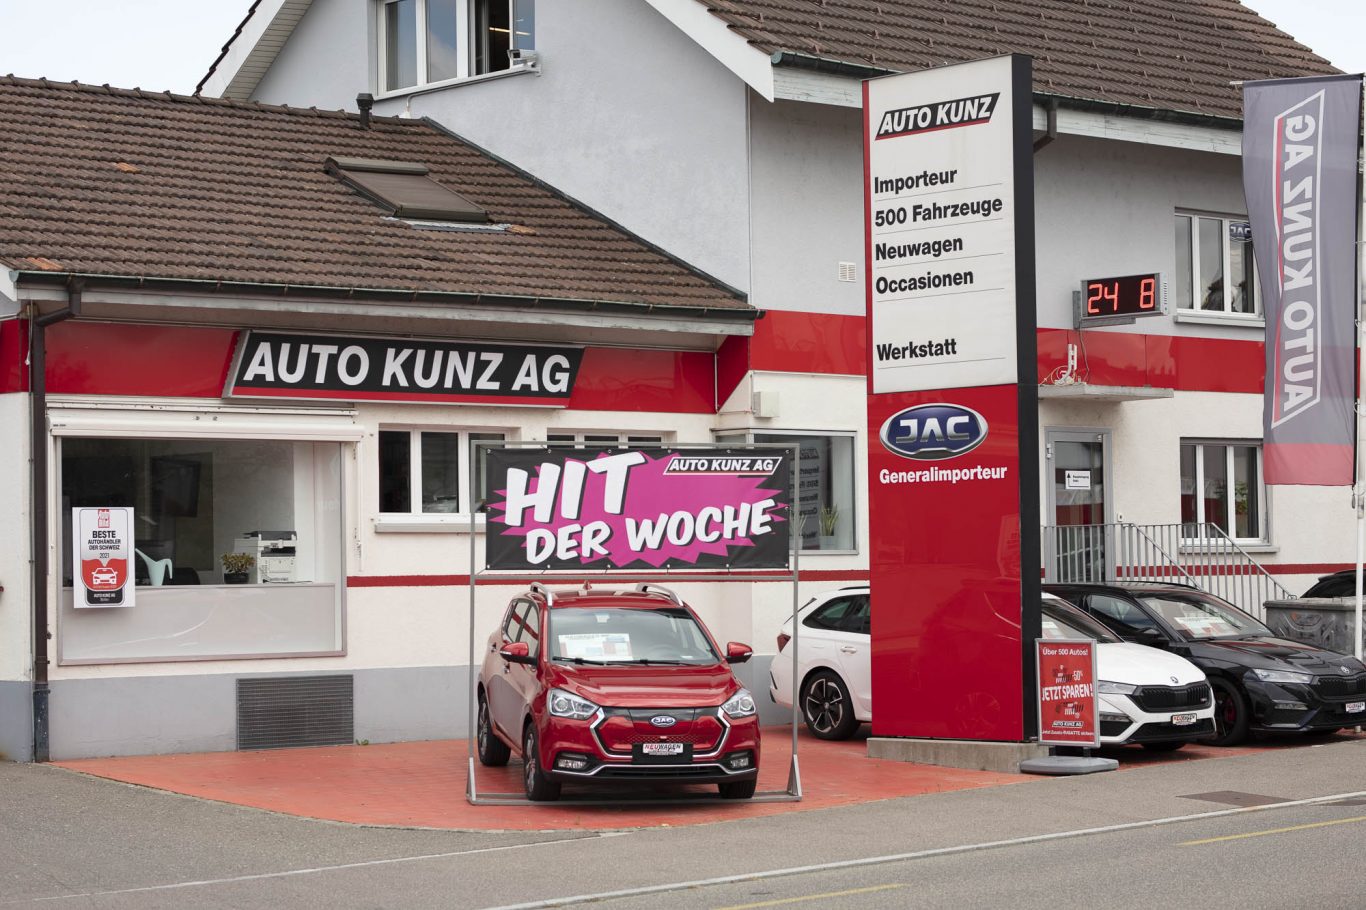 Auto günstig kaufen Aargau - Auto Kunz AG mit den schweizweit tiefsten Preisen